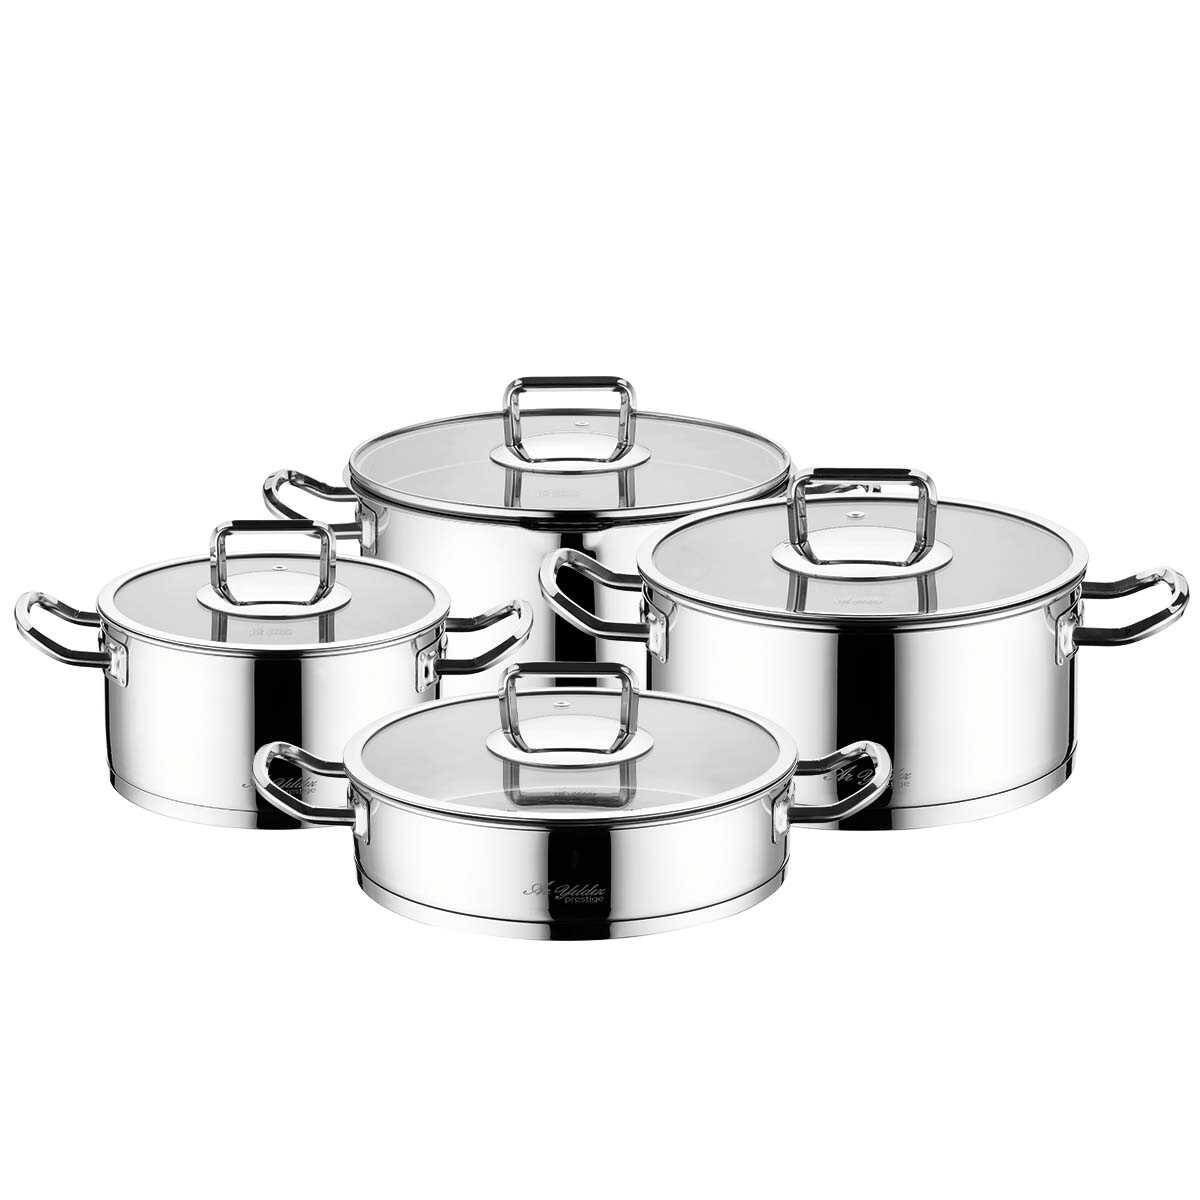 Aryıldız Vento Prestige Cookware Set 8 Pieces